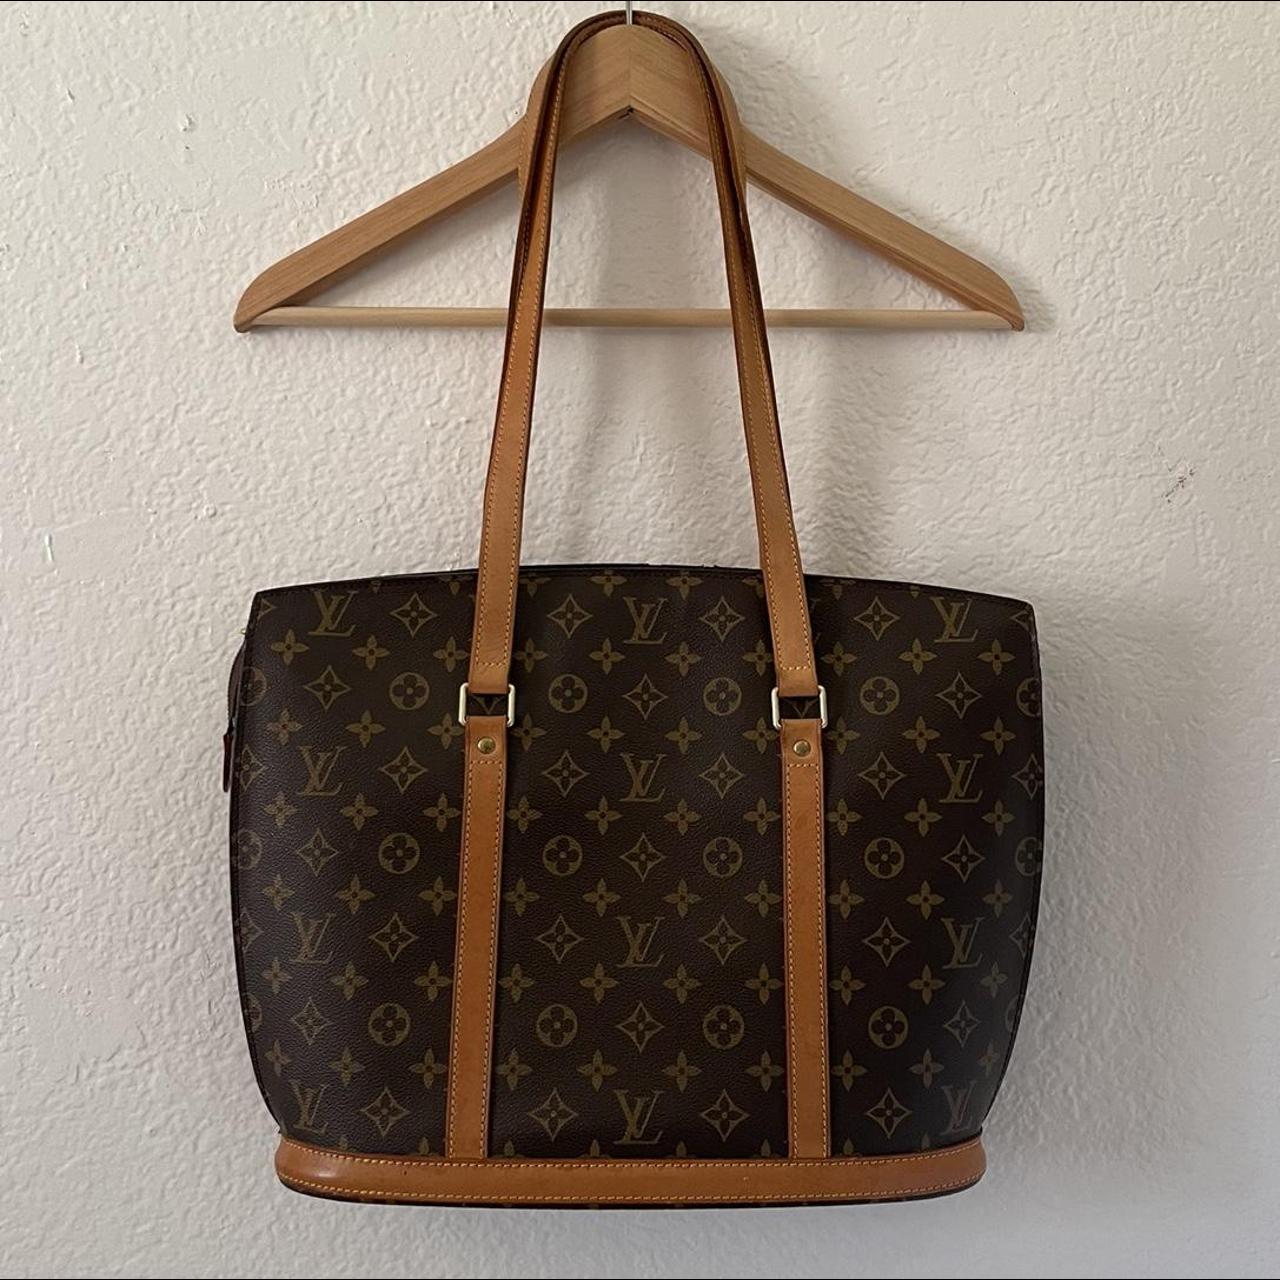 Authentic Louis Vuitton Babylon Shoulder Bag Please - Depop